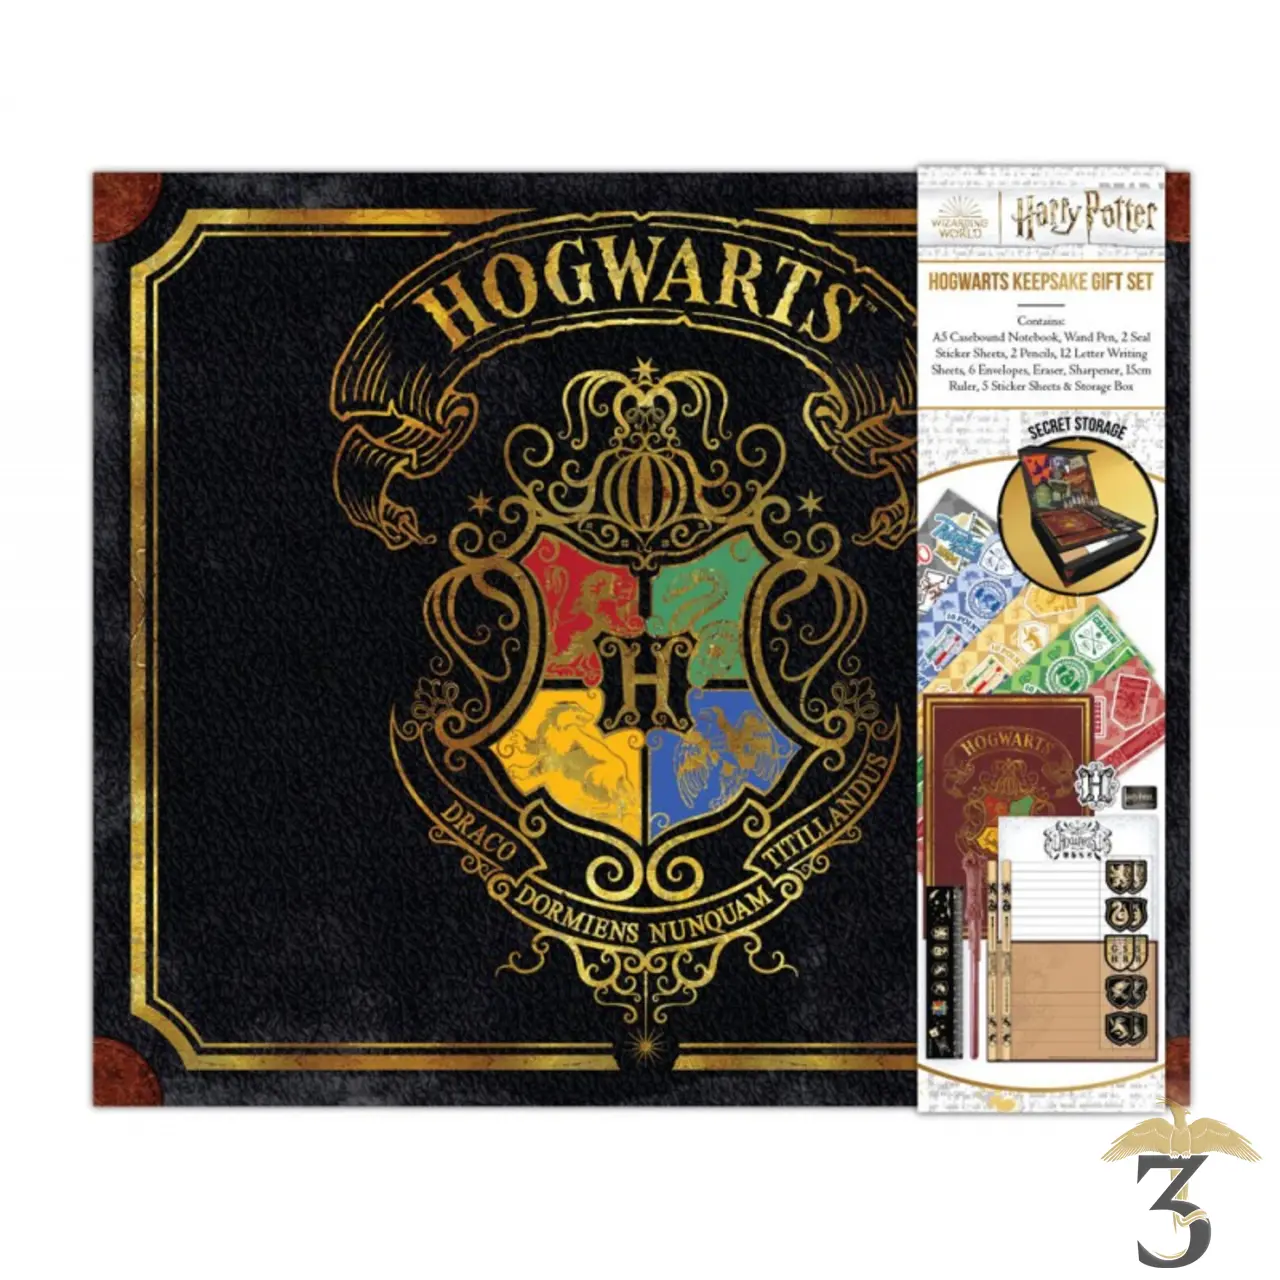 Boîte de Rangement Harry Potter Poudlard sur Cadeaux et Anniversaire